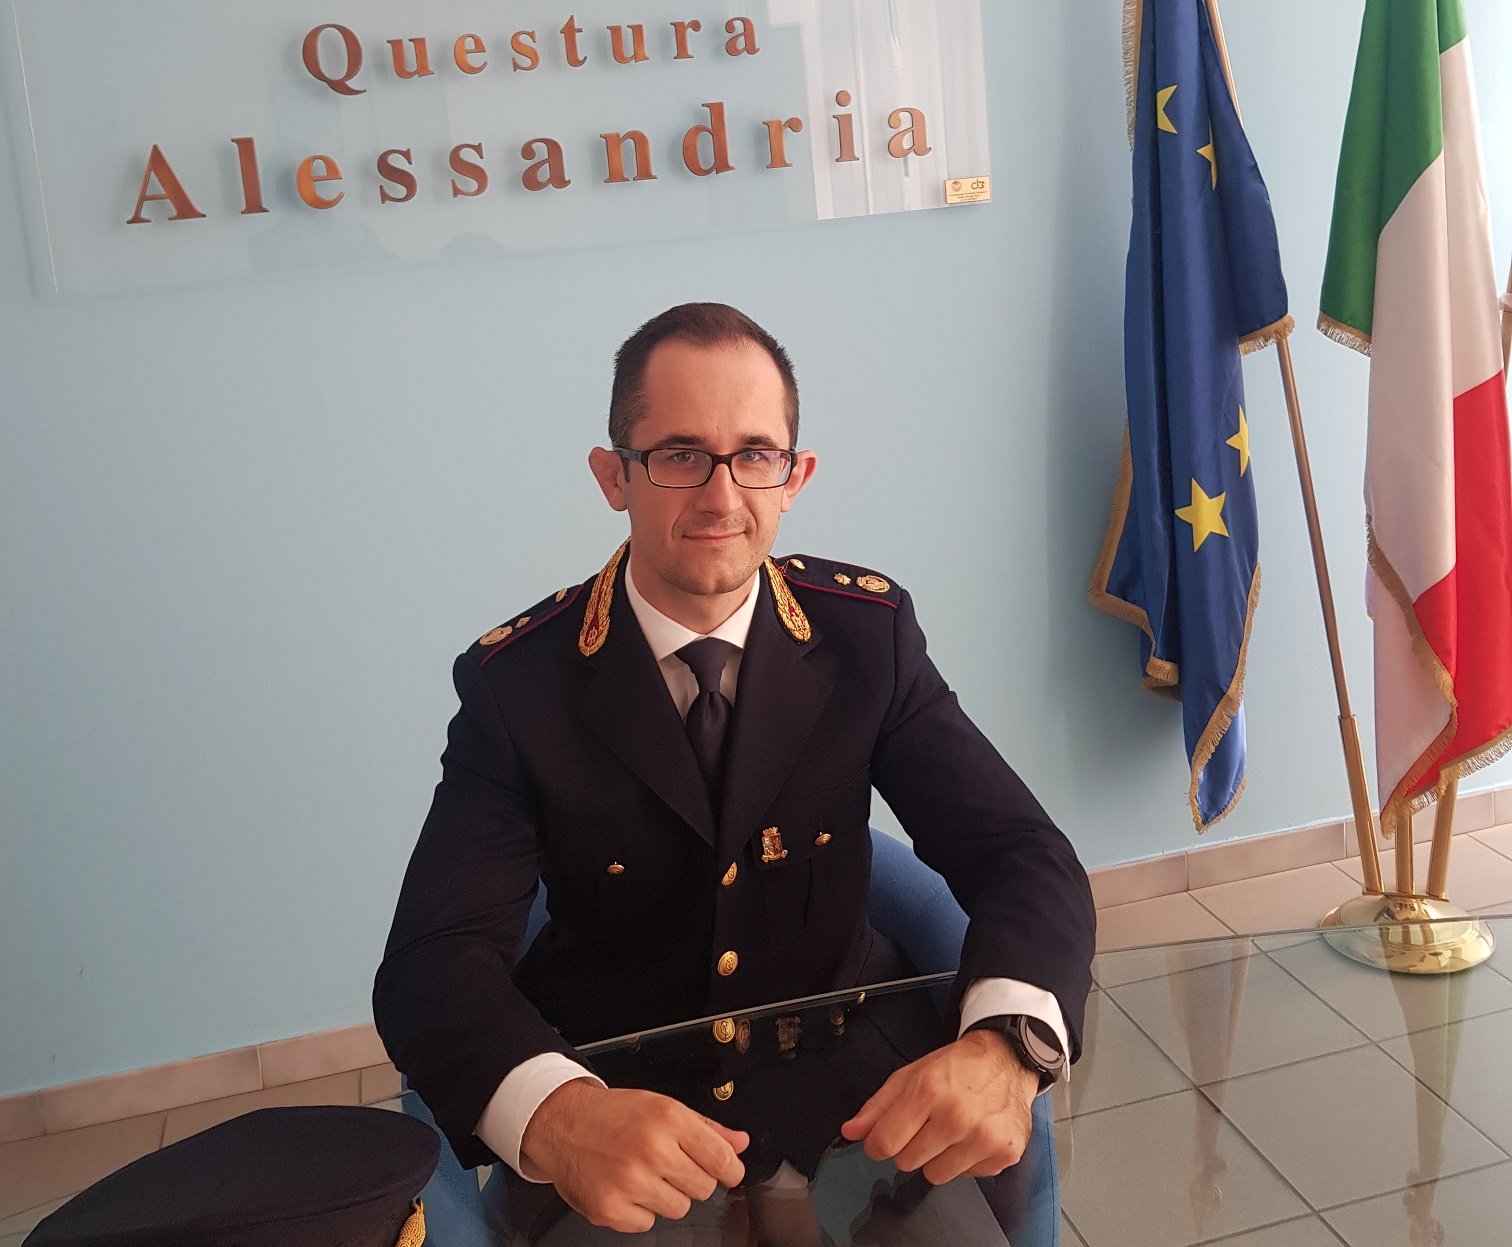 Questura di Alessandria: Riccardo Calcagno nuovo Dirigente della Squadra Mobile